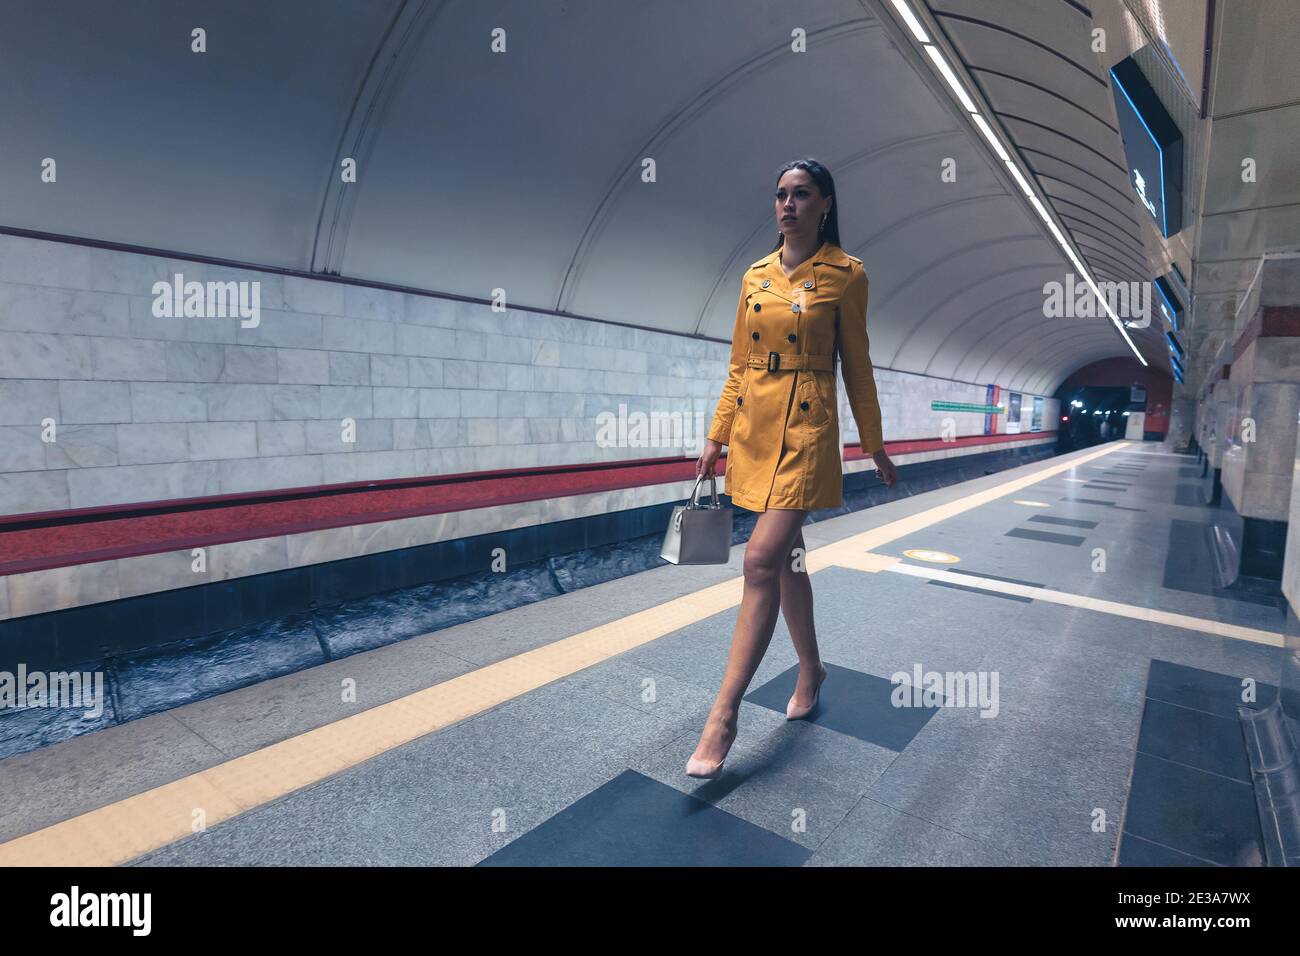 Camminando sulla piattaforma della metropolitana bella ragazza giovane con lunga bella gambe in un cappotto di primavera giallo e una borsa bianca o borsetta in mano Foto Stock